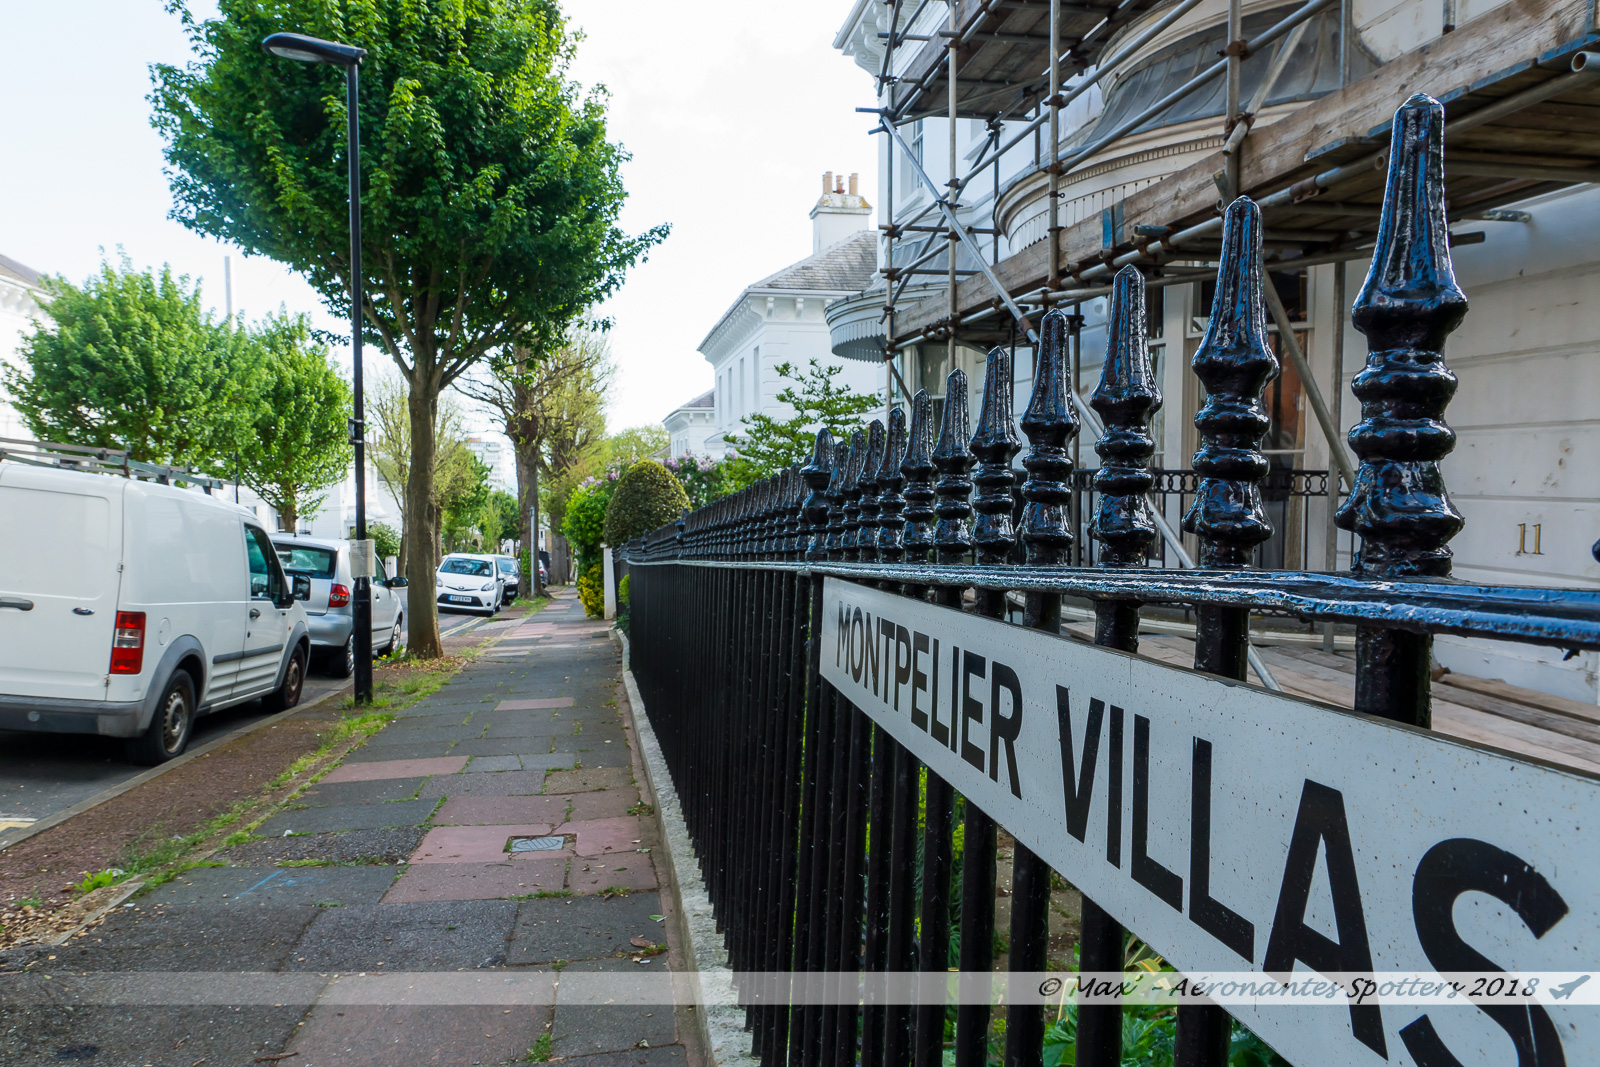 Le quartier de "Montpelier", constitué de maisons construites au milieu du XIXème siècle dans un style alliant Régence anglaise et inspirations italiennes, est le quartier le plus chic de Brighton.